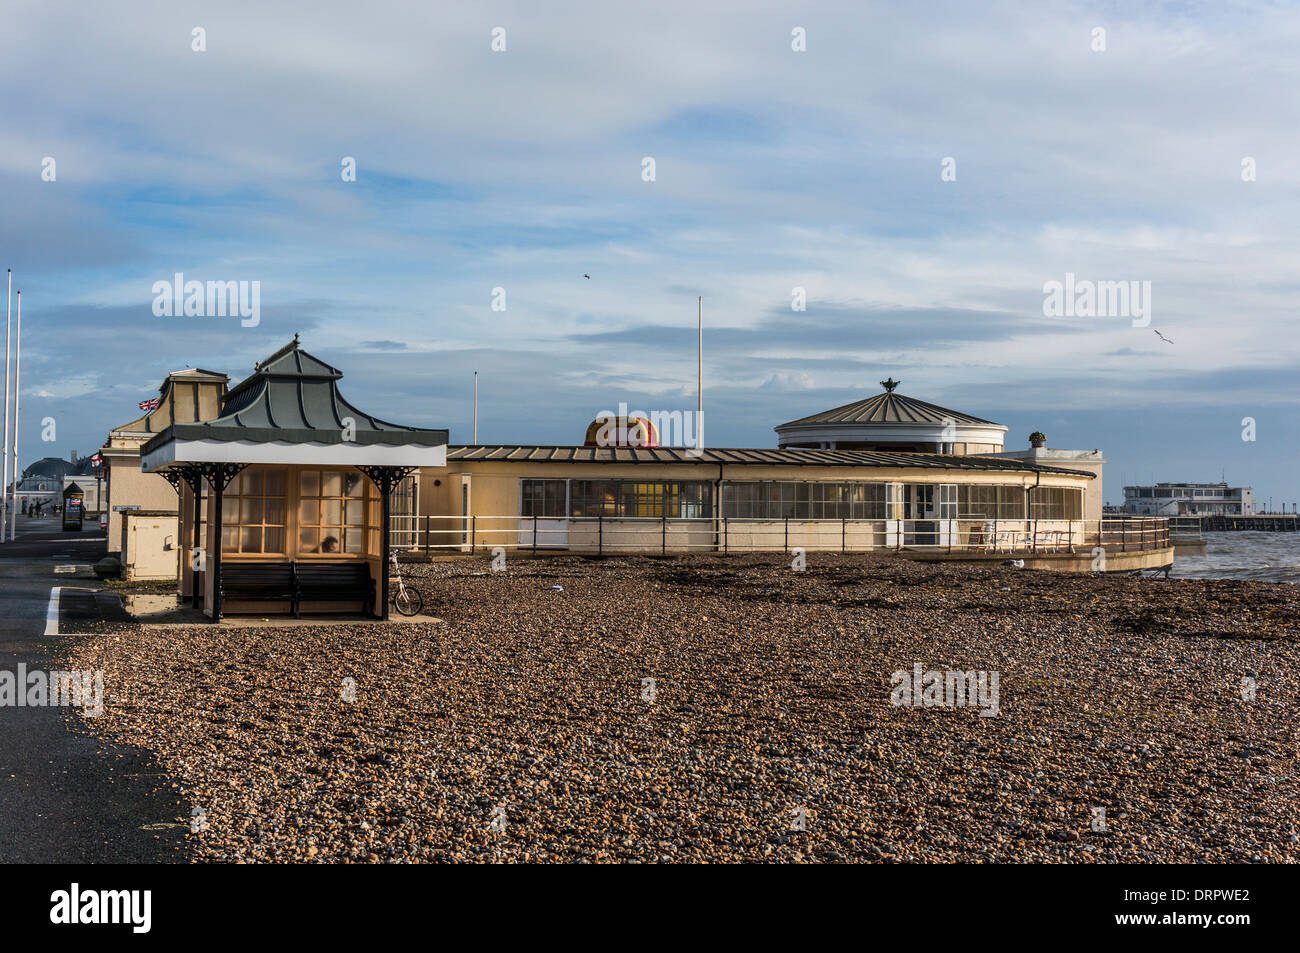 L'architecture d'époque au bord de mer sur une plage tranquille, baigné de lumière d'hiver chaud, à Worthing, West Sussex, Angleterre, Royaume-Uni. Banque D'Images